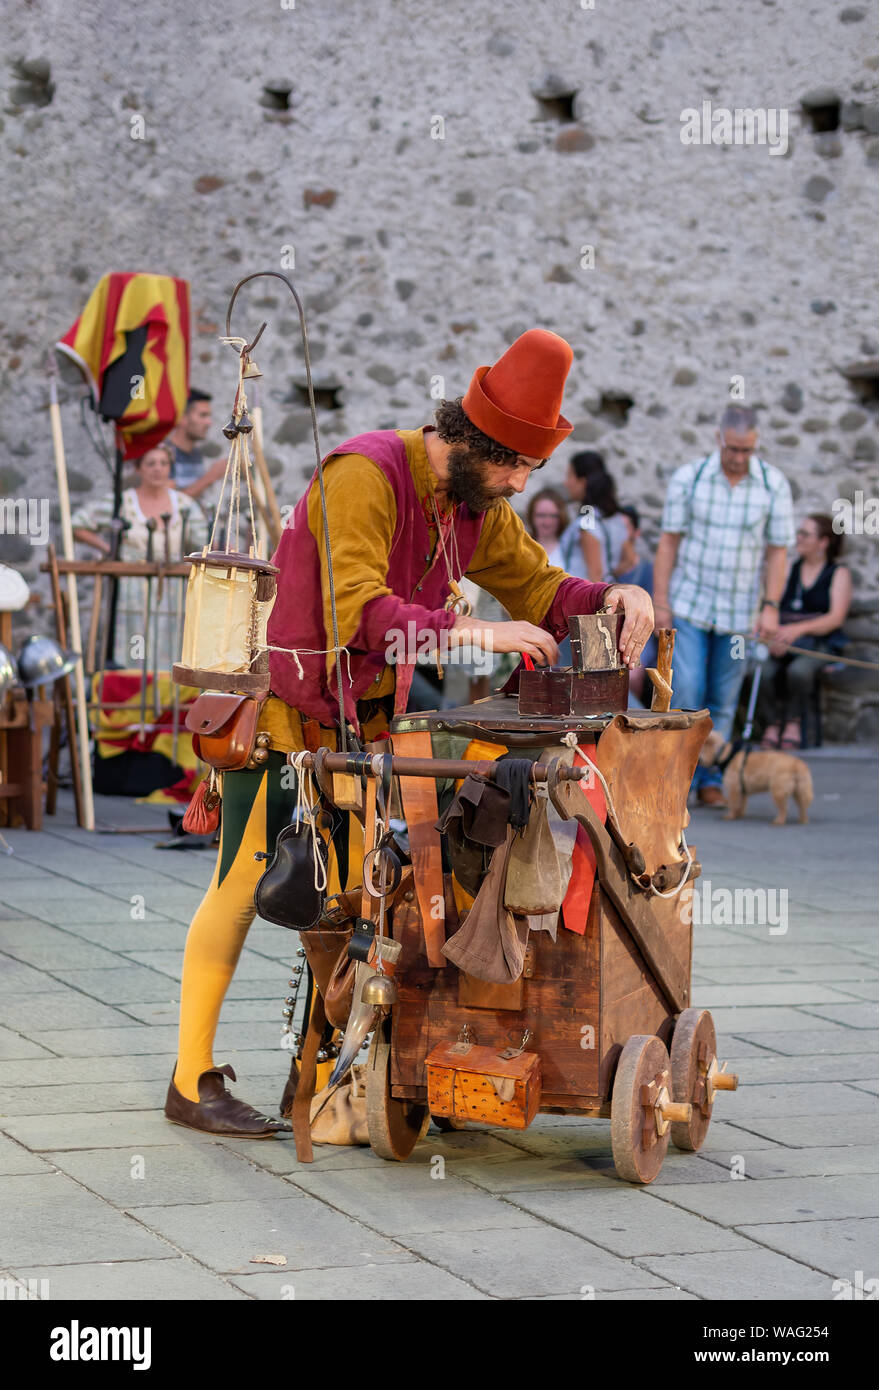 FILETTO, Italia - Agosto 11, 2019: un mago bufón busca algún elemento en su caja de trucos. Fiestas del pueblo en una auténtica aldea medieval Foto de stock